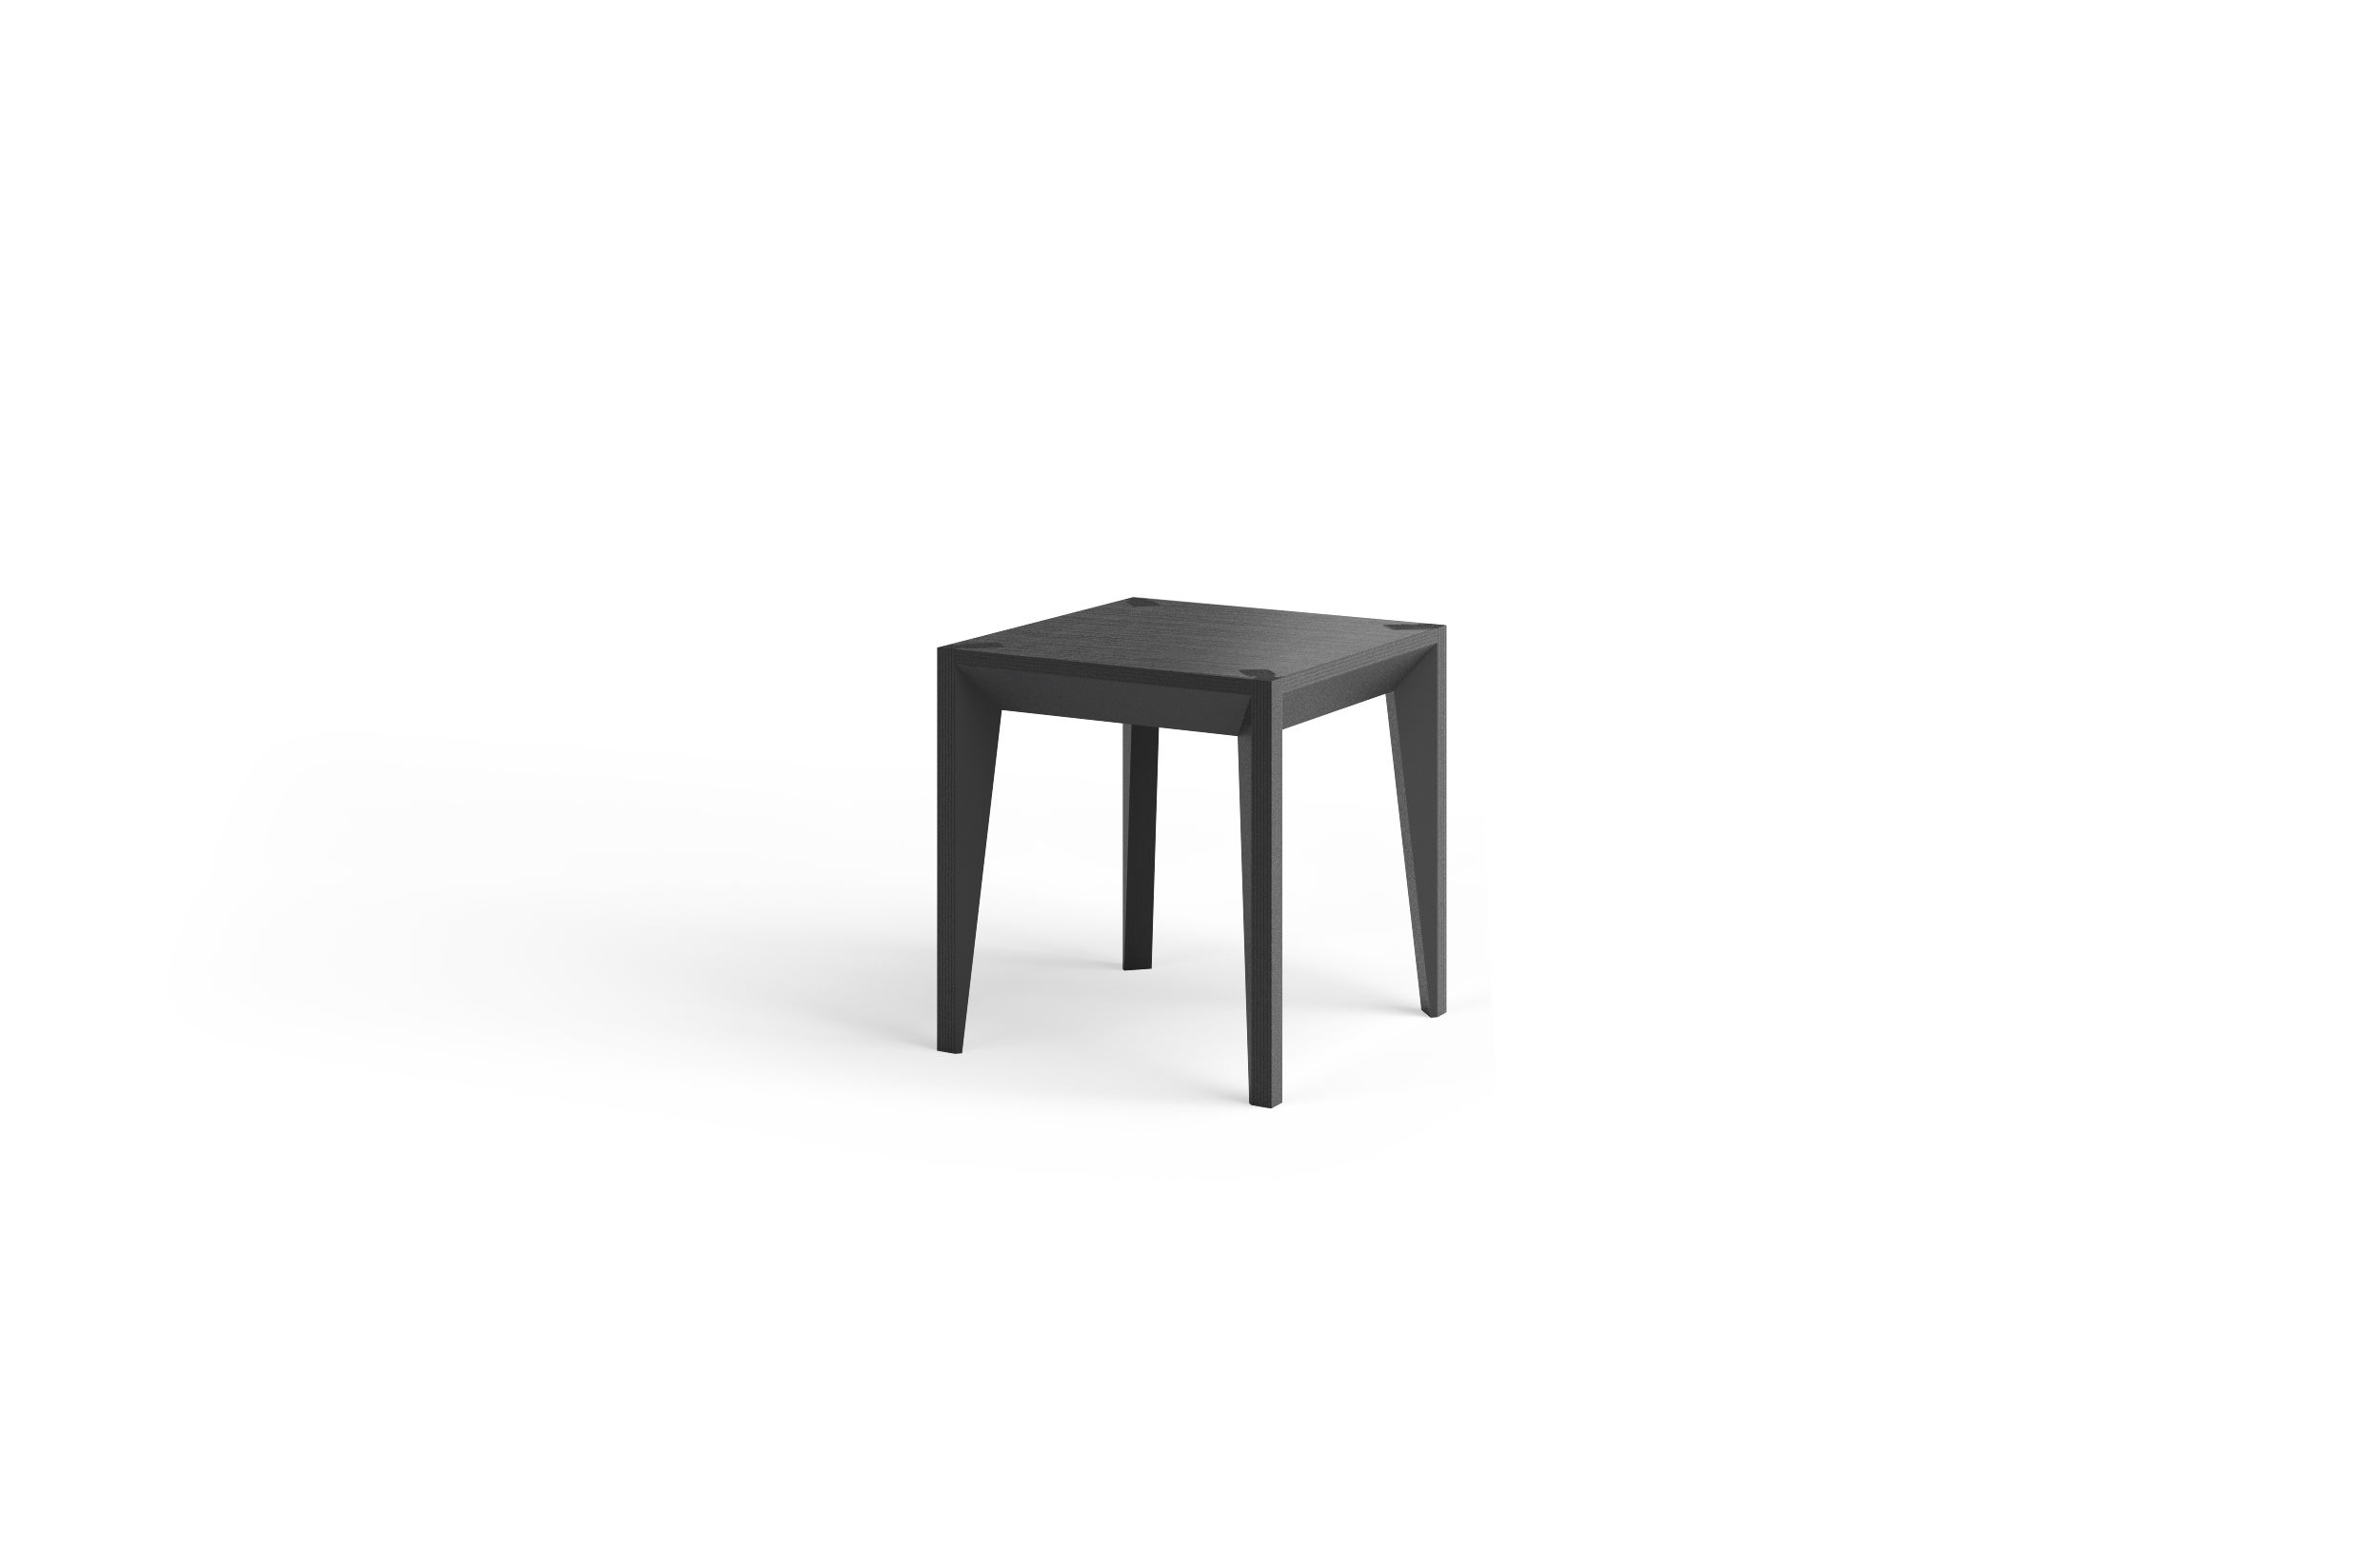 Faisant partie de la série MiMi, cette table d'appoint ou tabouret minimaliste et polyvalente met en valeur la maison et le bureau. La géométrie nette et facettée ajoute de la profondeur et de la sophistication, tandis que le plateau carré de 17